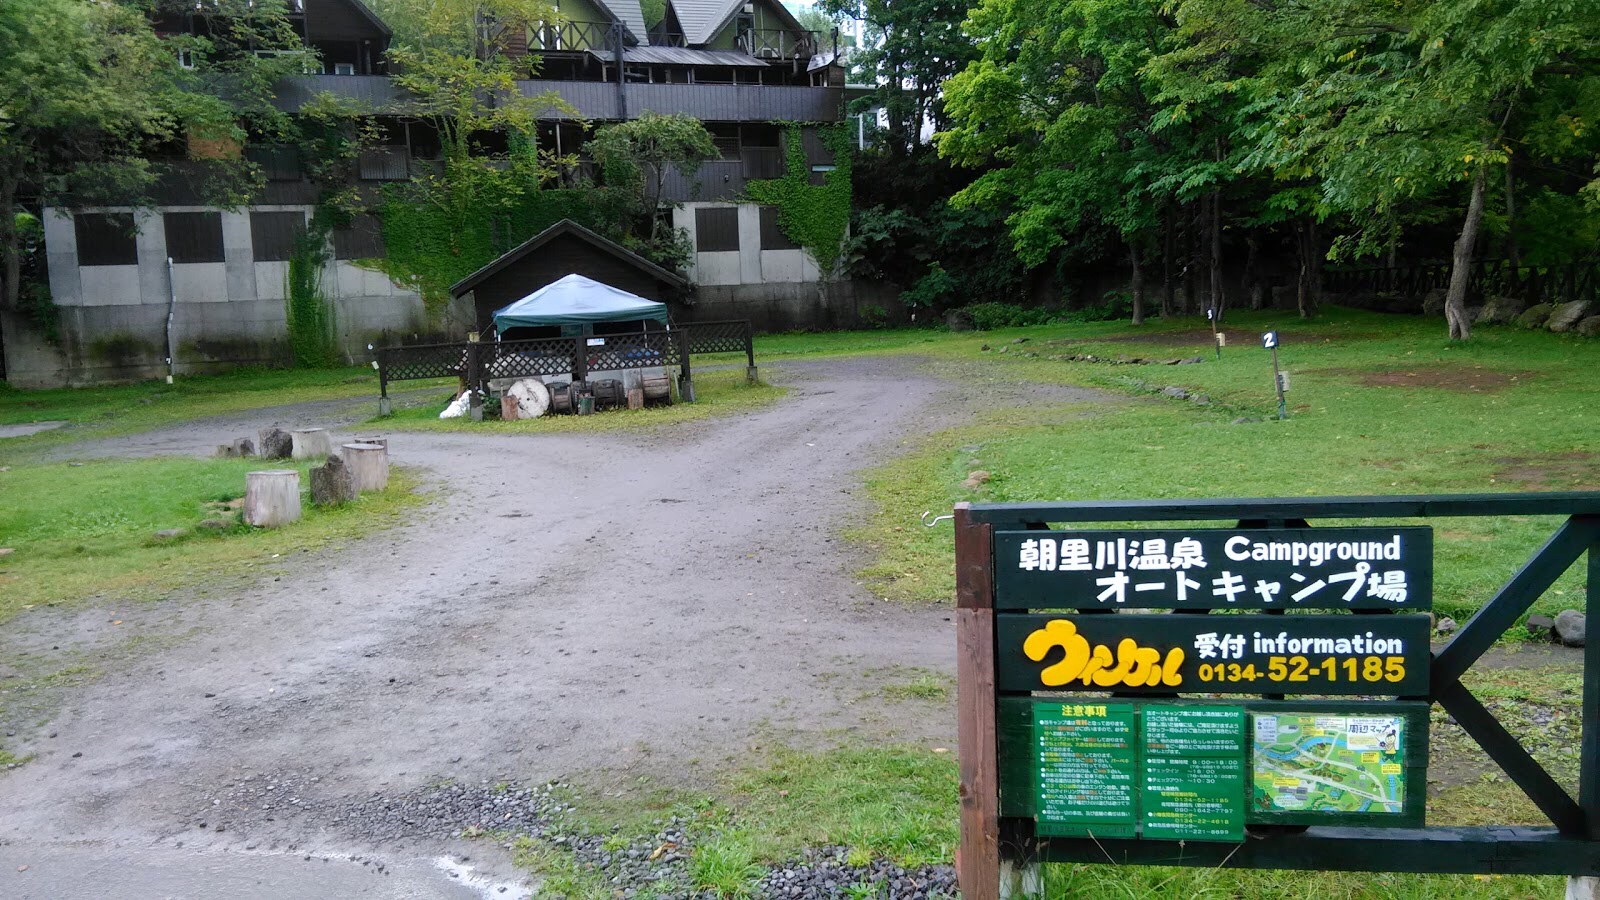 Asarigawa Hot Spring Auto Camping Ground